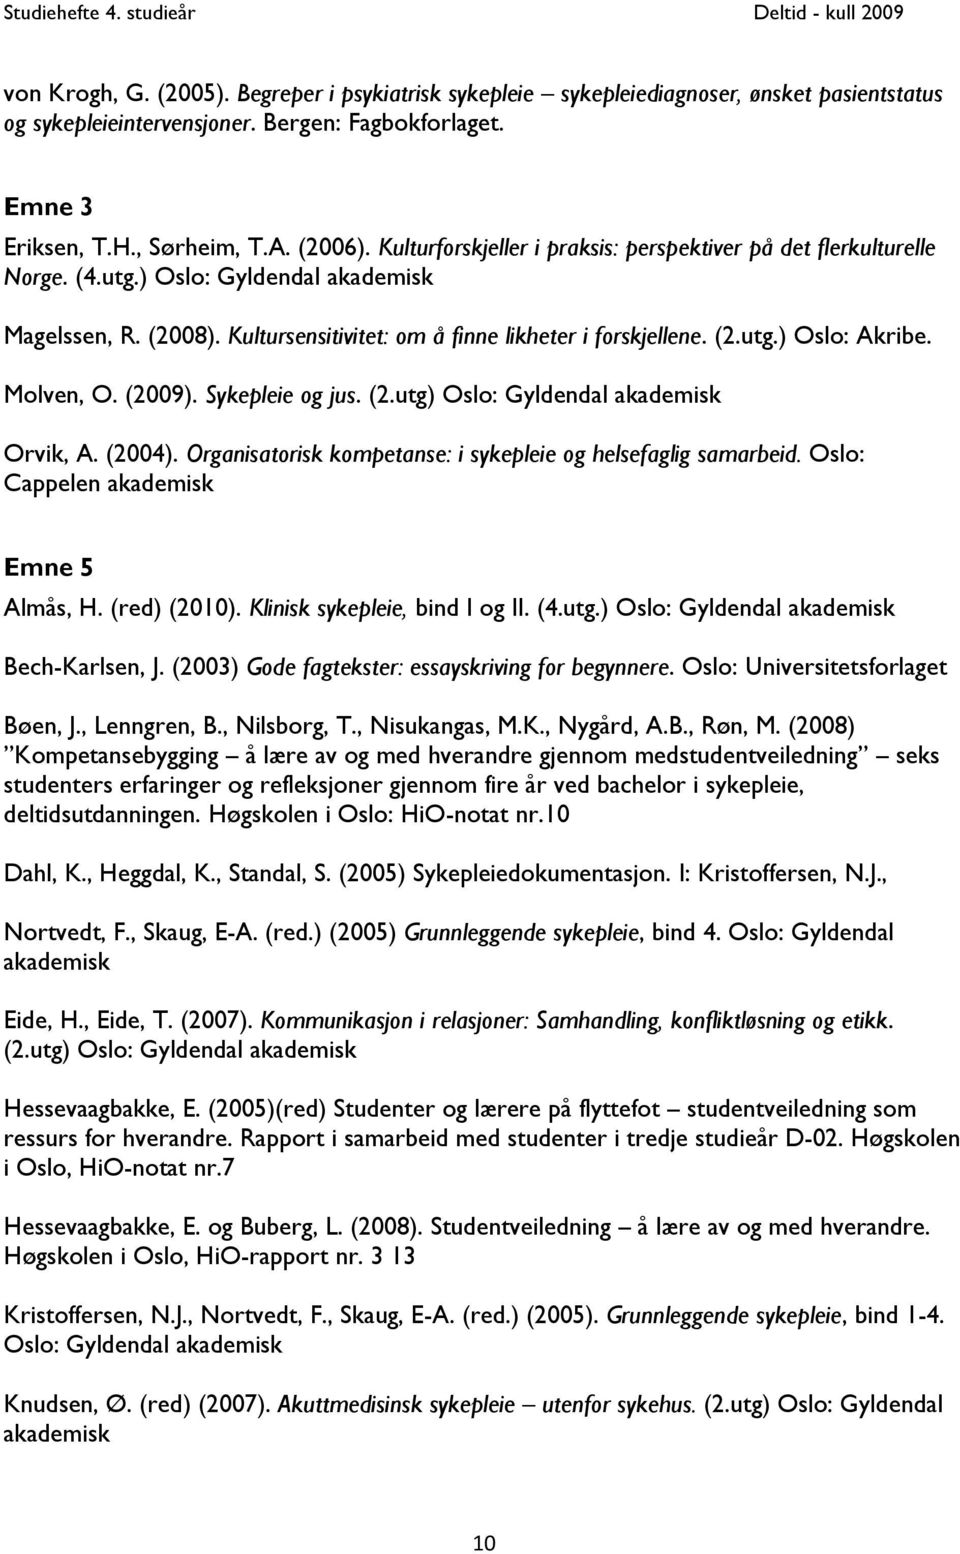 Molven, O. (2009). Sykepleie og jus. (2.utg) Oslo: Gyldendal akademisk Orvik, A. (2004). Organisatorisk kompetanse: i sykepleie og helsefaglig samarbeid. Oslo: Cappelen akademisk Emne 5 Almås, H.